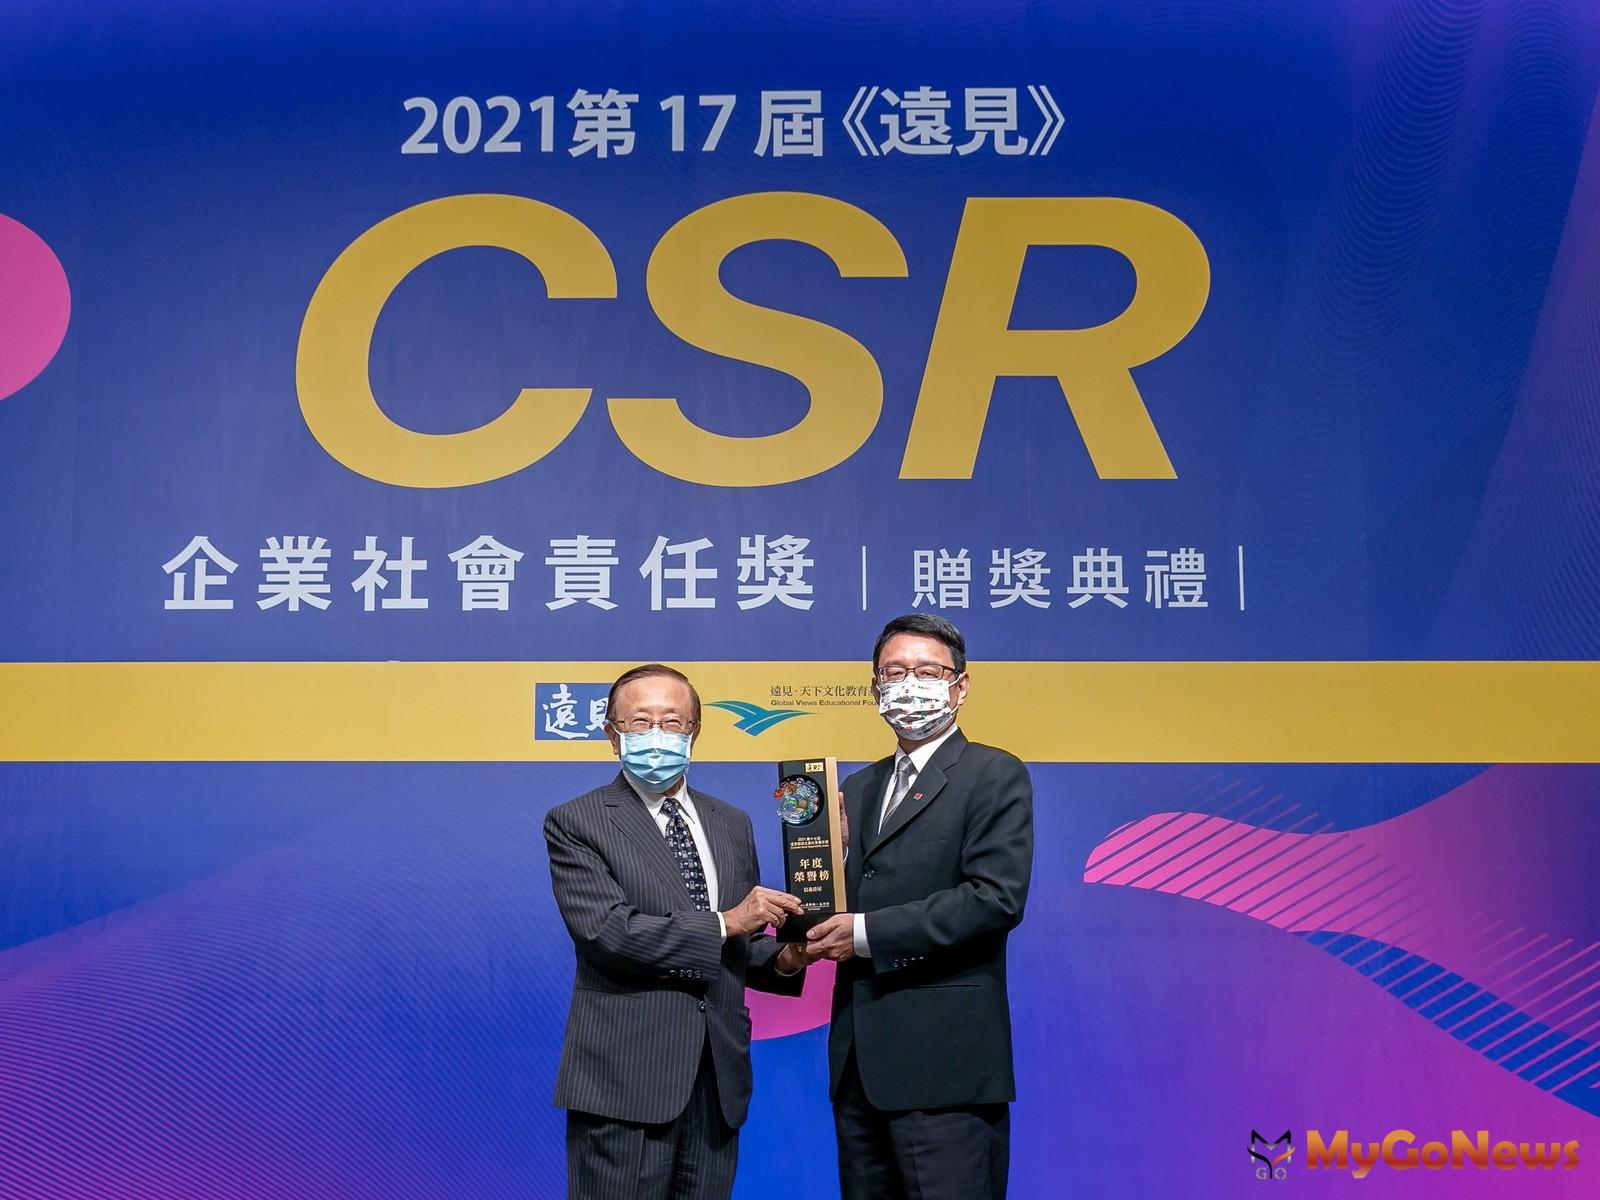 信義房屋獲頒遠見CSR最高殊榮「年度榮譽榜」